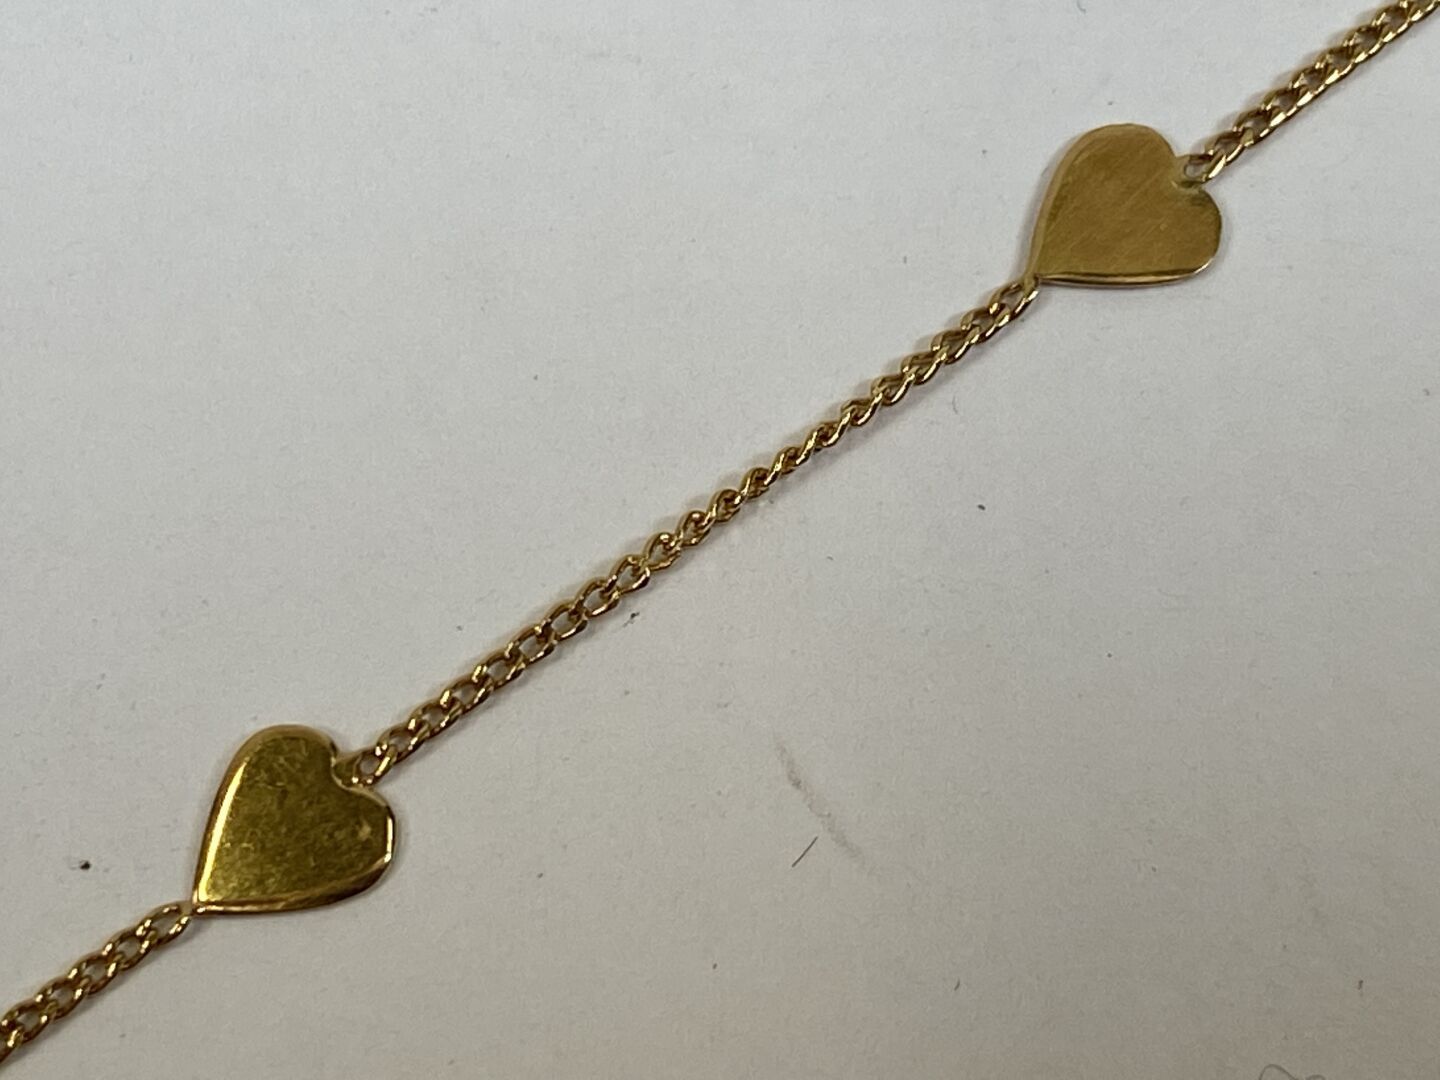 Null Bracciale in oro giallo 18 carati con cuoricini.

Peso: 1,3 g.

L. 18 cm.